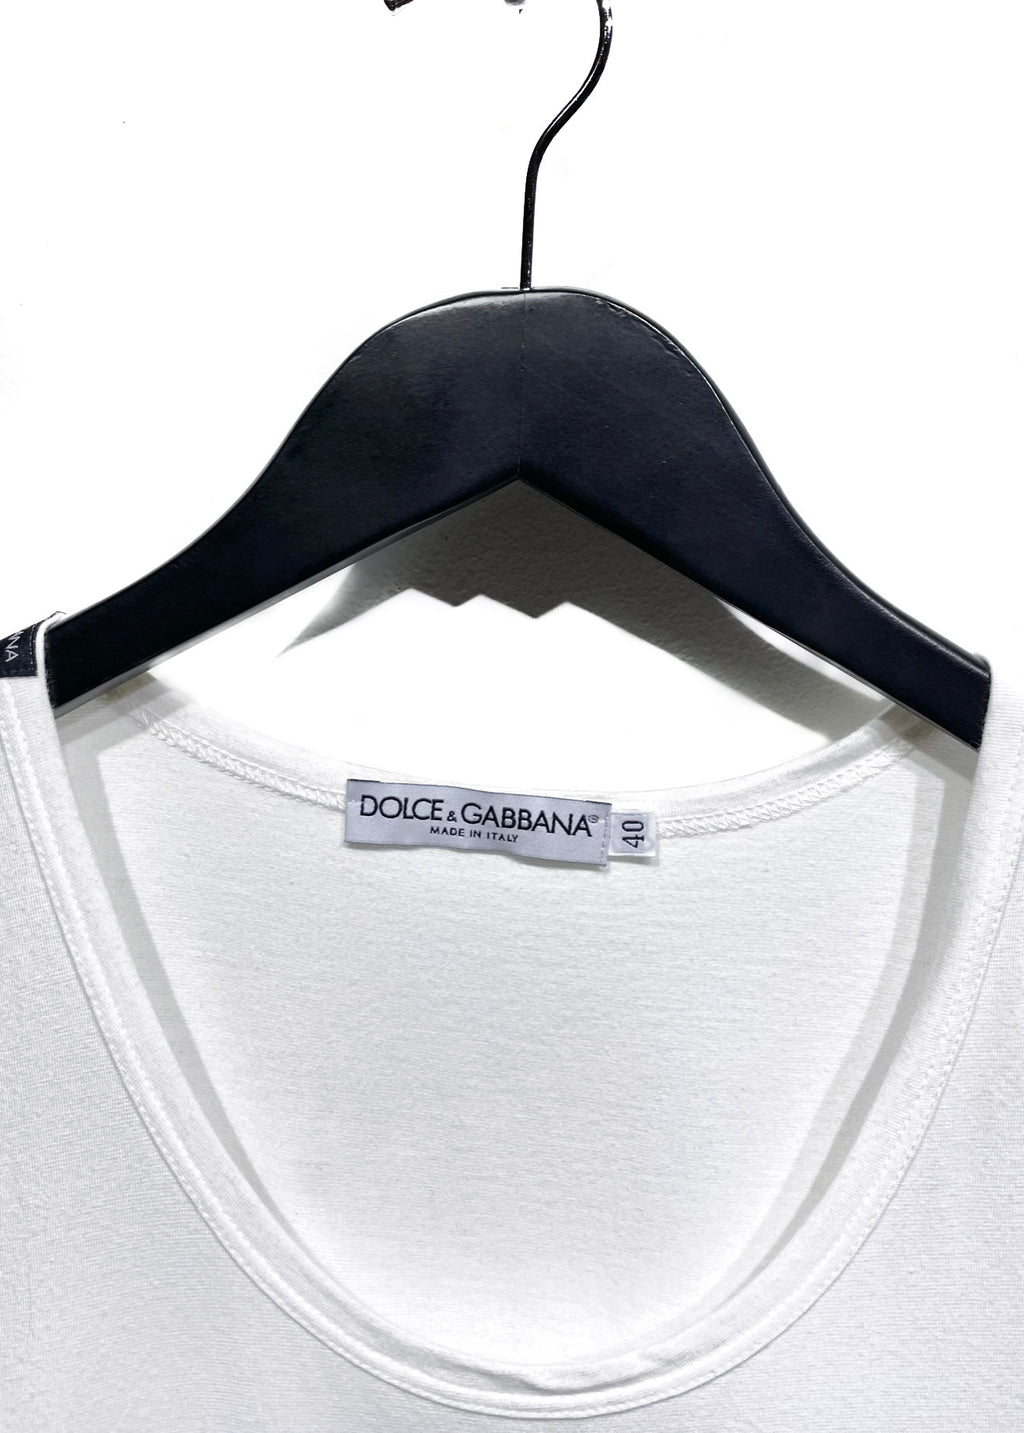 Dolce & Gabbana ''10'' Lace White Cotton Tank Top